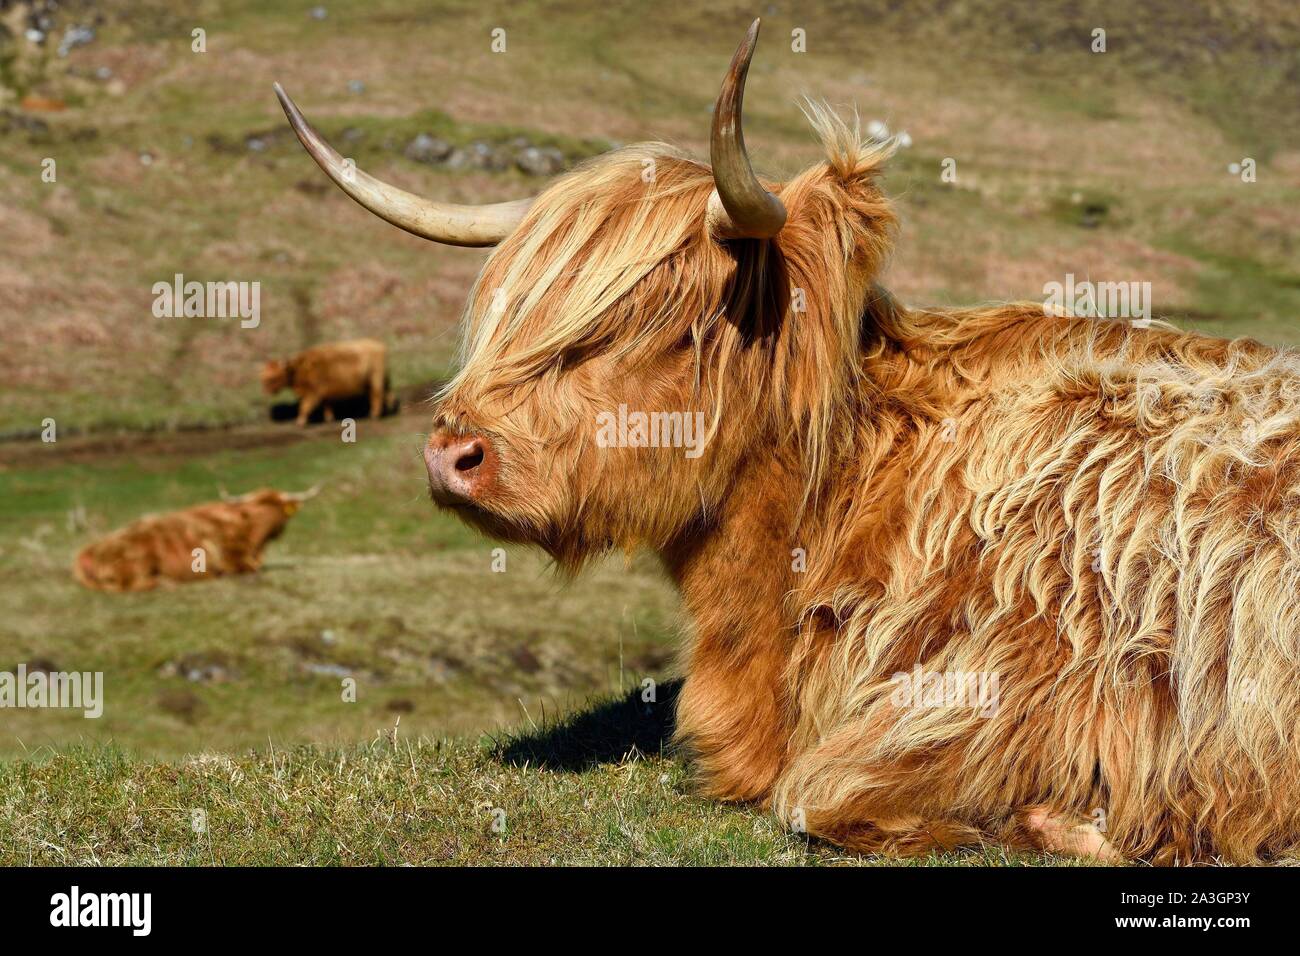 United Kingdom, Scotland, Highland, Inner Hebrides, Isle of Mull, Highland cow Stock Photo